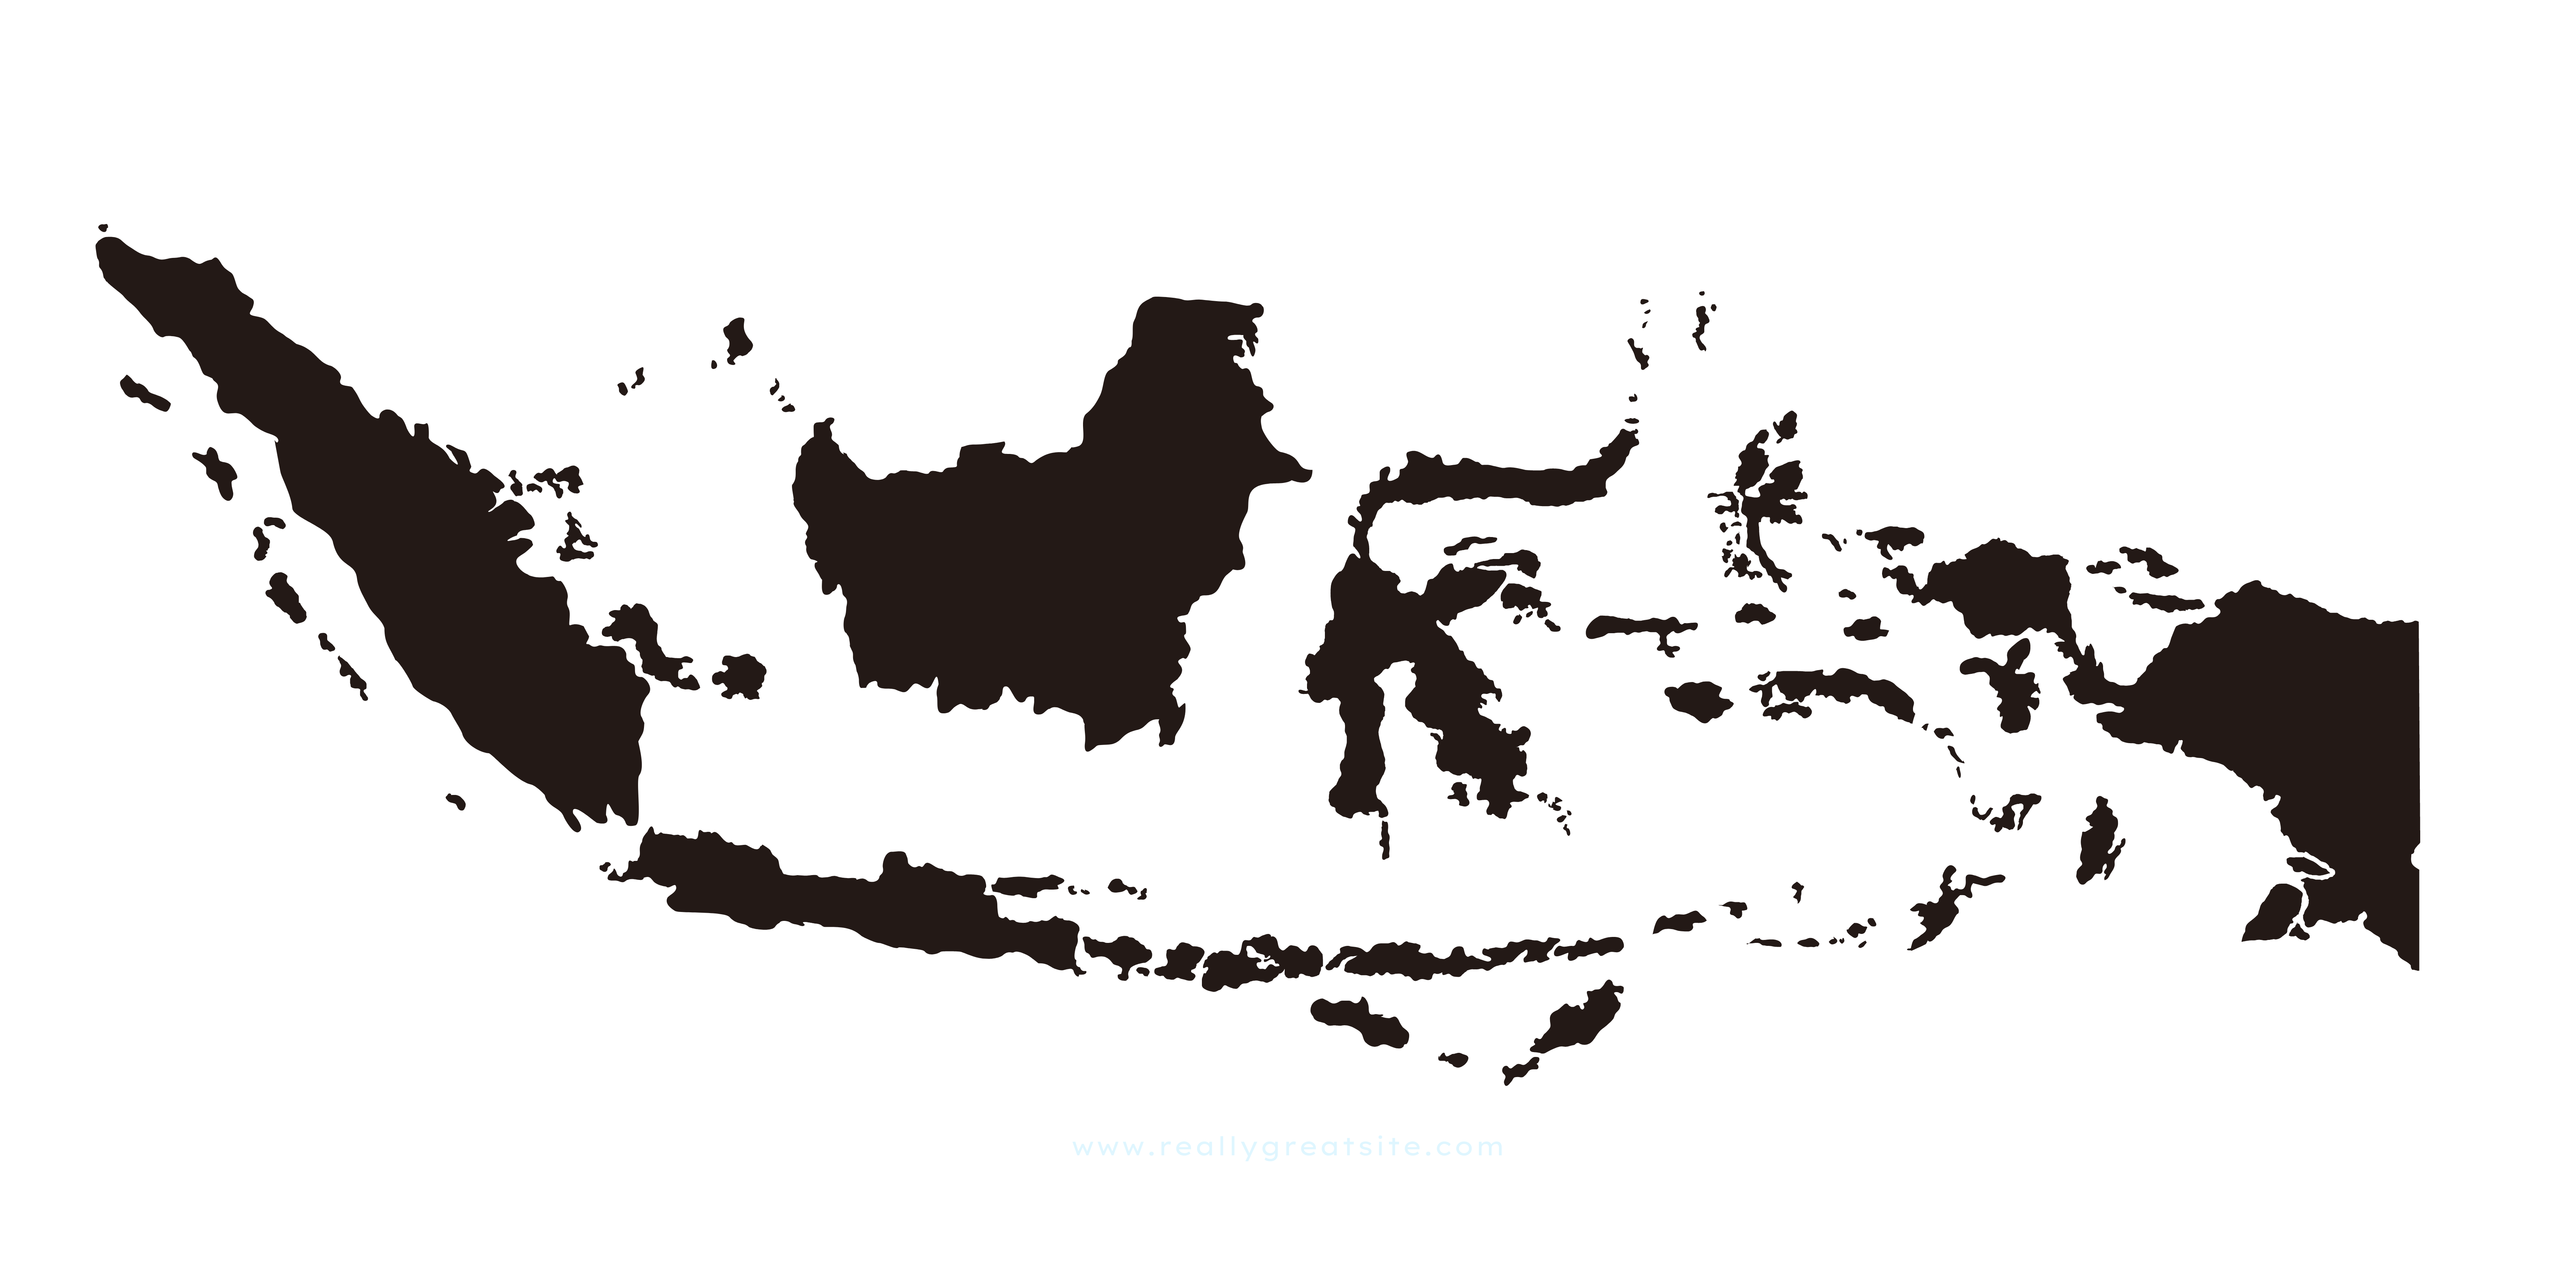 Terbaru, Jumlah 38 Provinsi Baru Di Indonesia Dengan Nama Kota